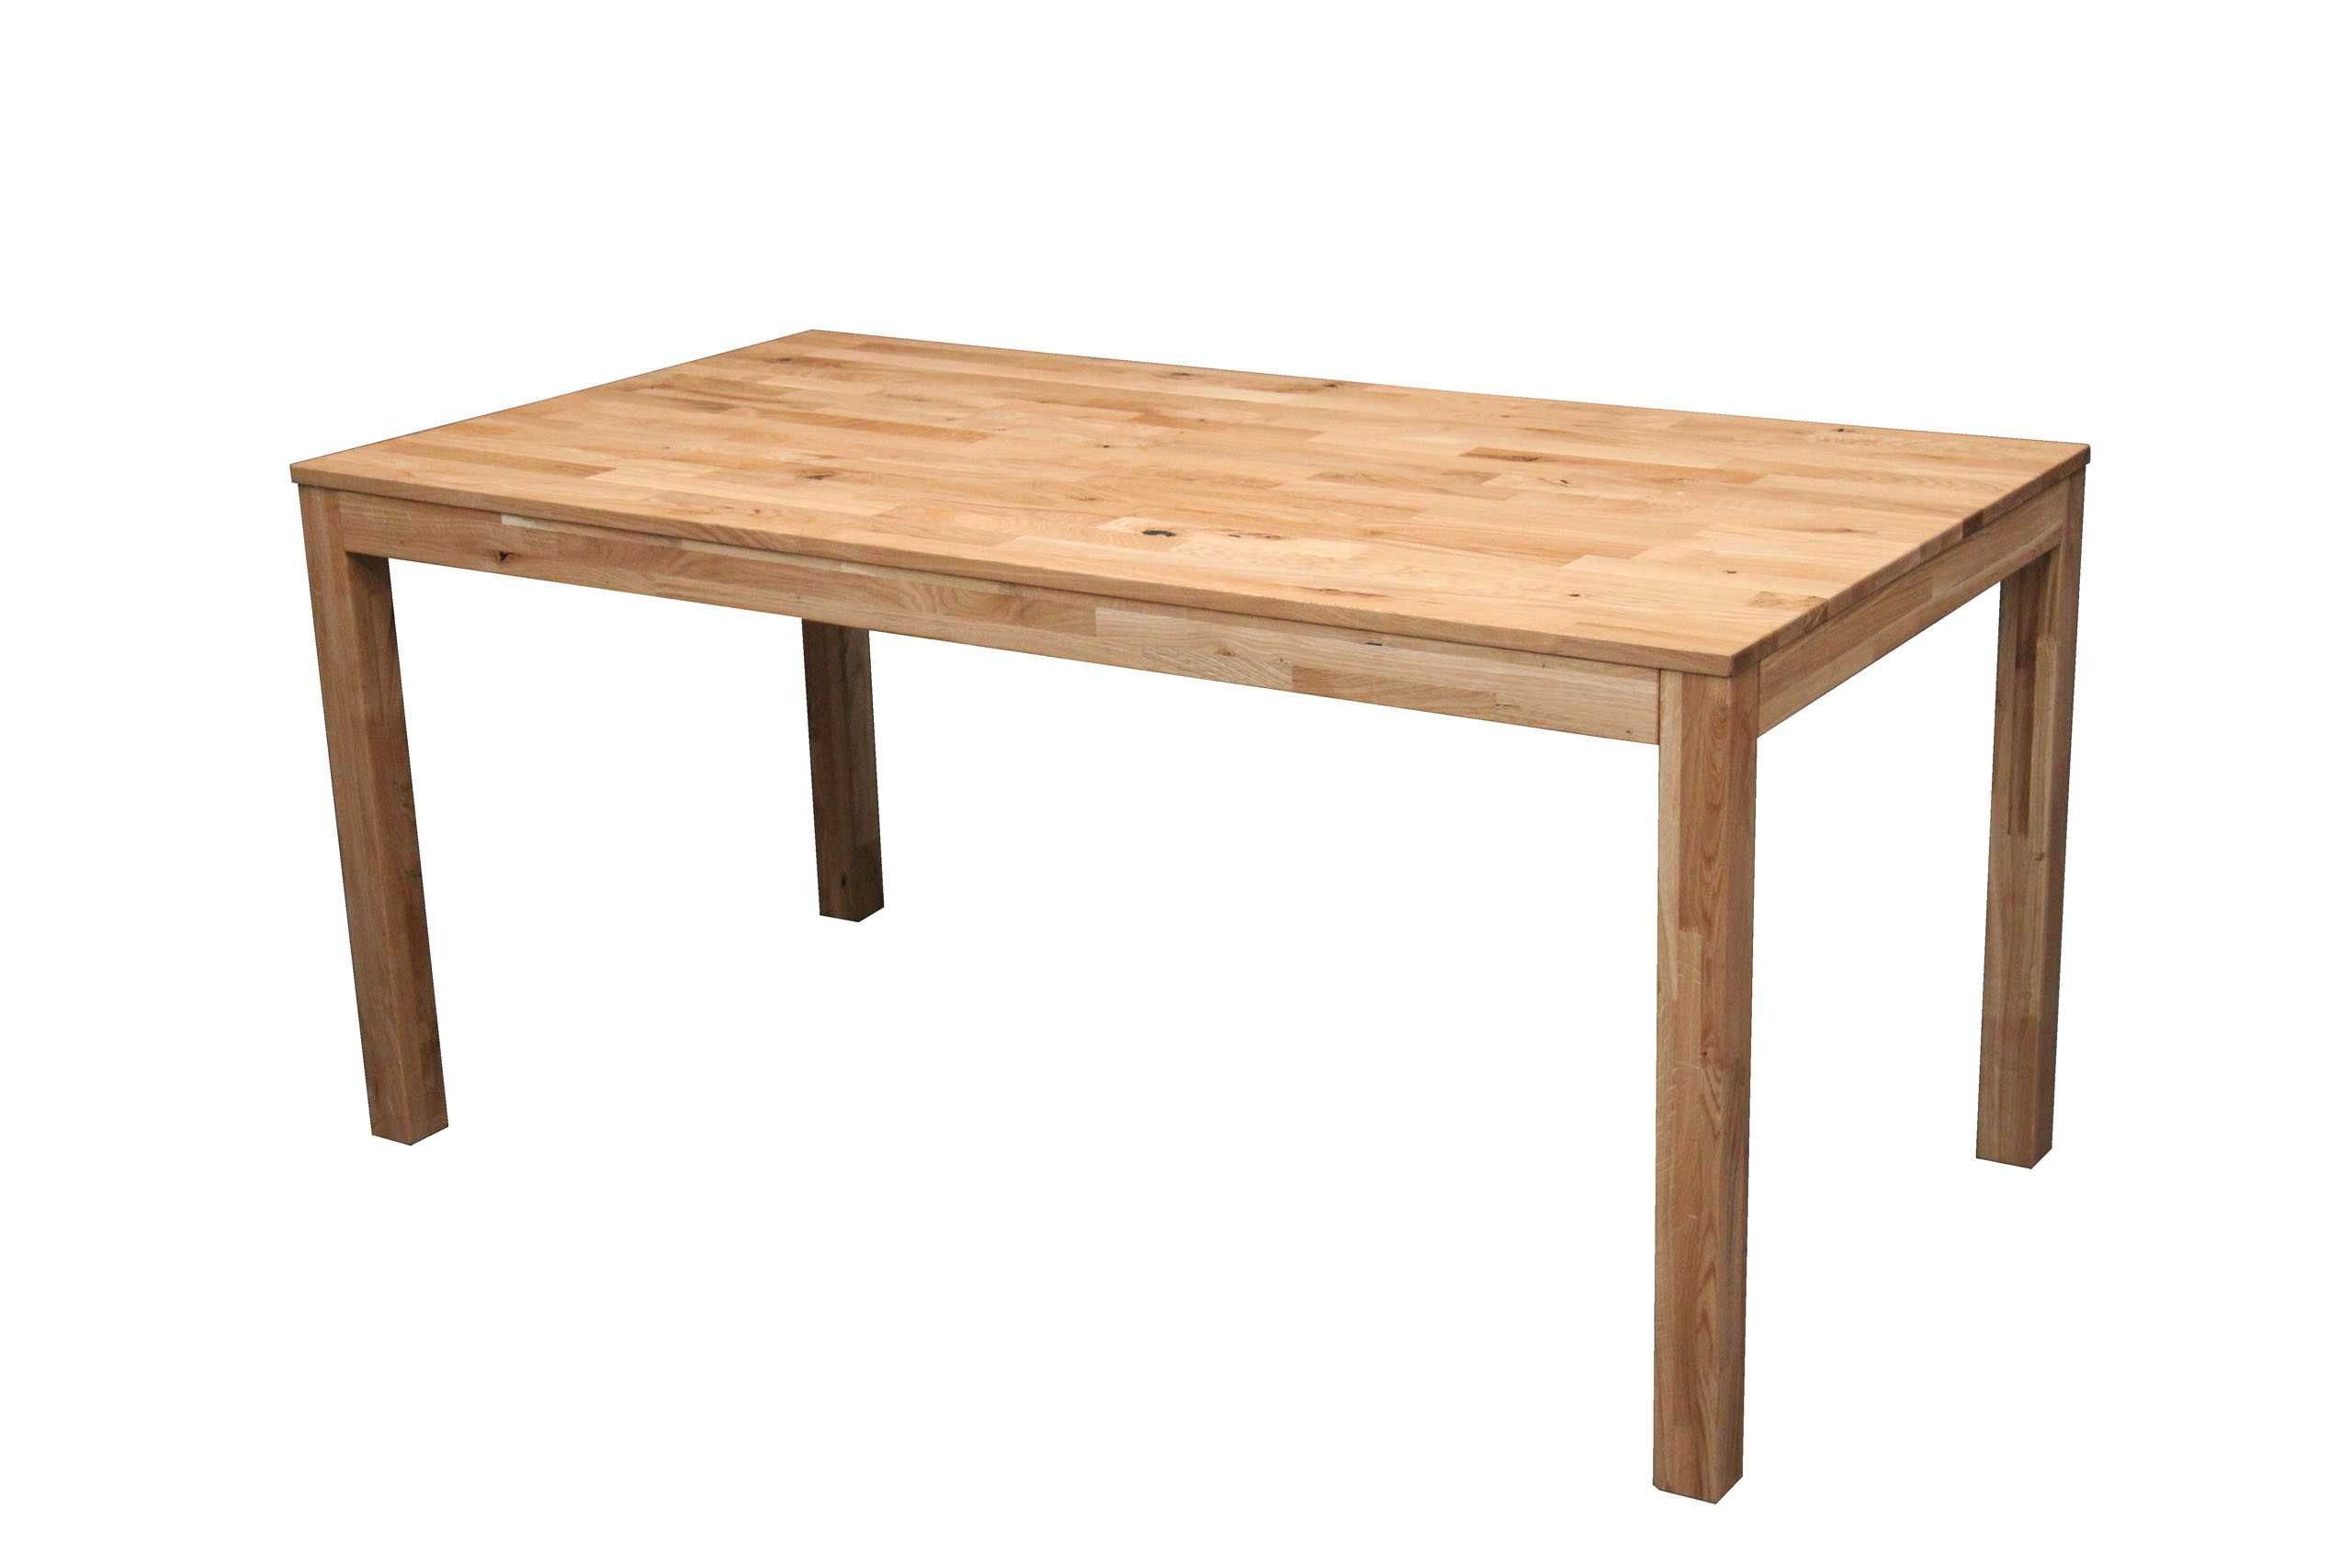 Stół dębowy drewniany do jadalni kuchni 160x85 cm Dąb BGM24.pl B 8700